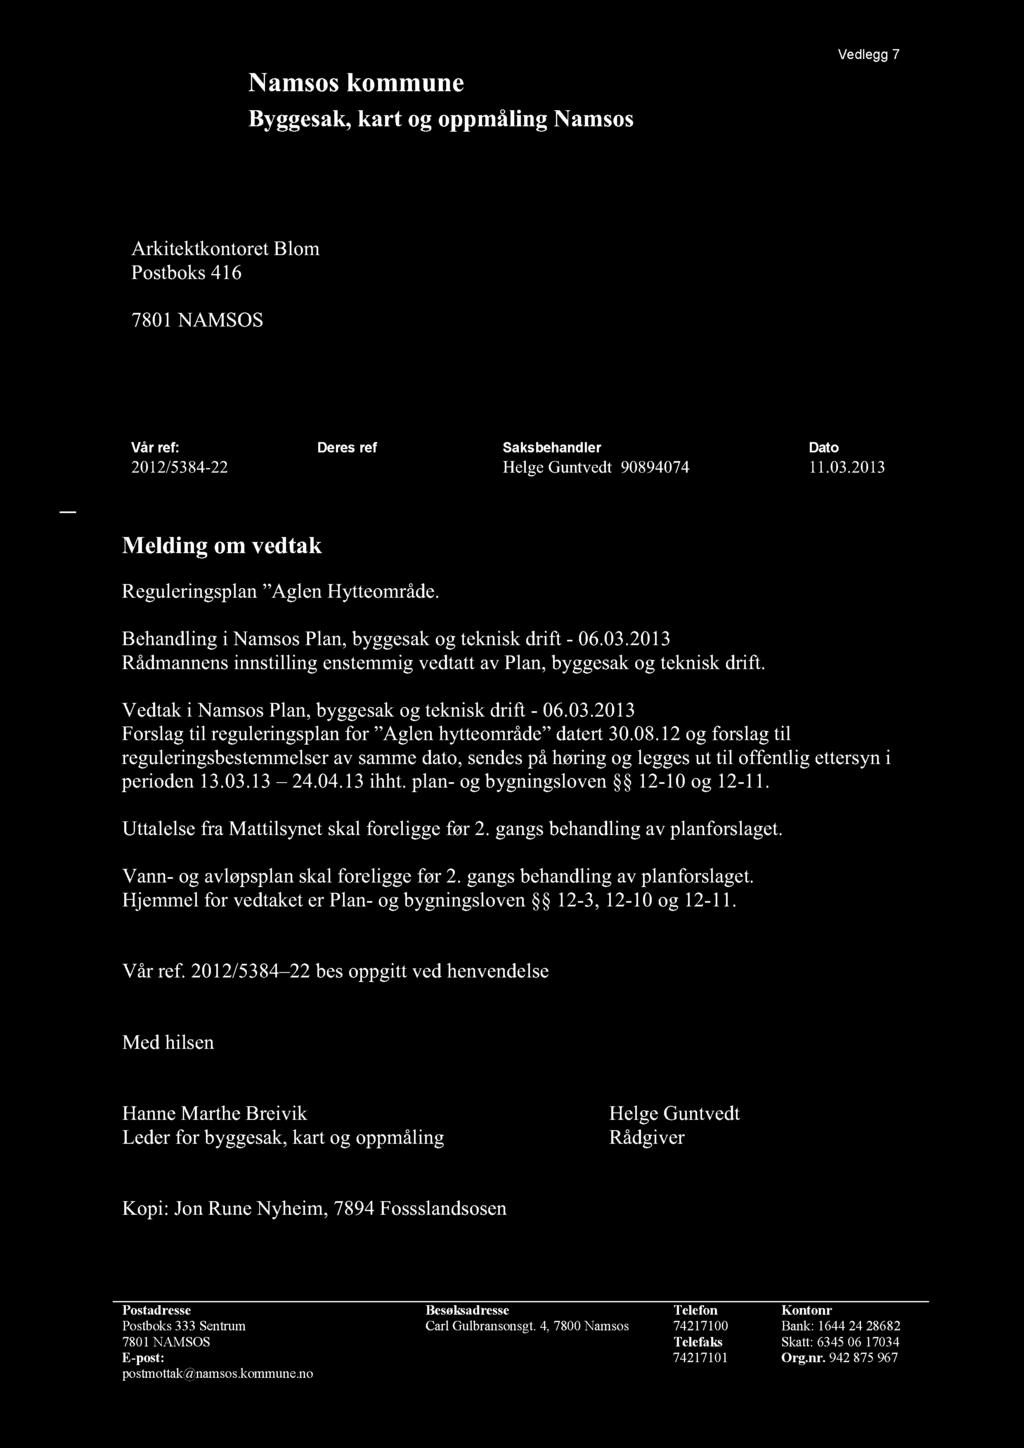 Vedtaki NamsosPlan,byggesakog tekniskdrift - 06.03.2013 Forslagtil reguleringsplanfor Aglen hytteområde datert30.08.